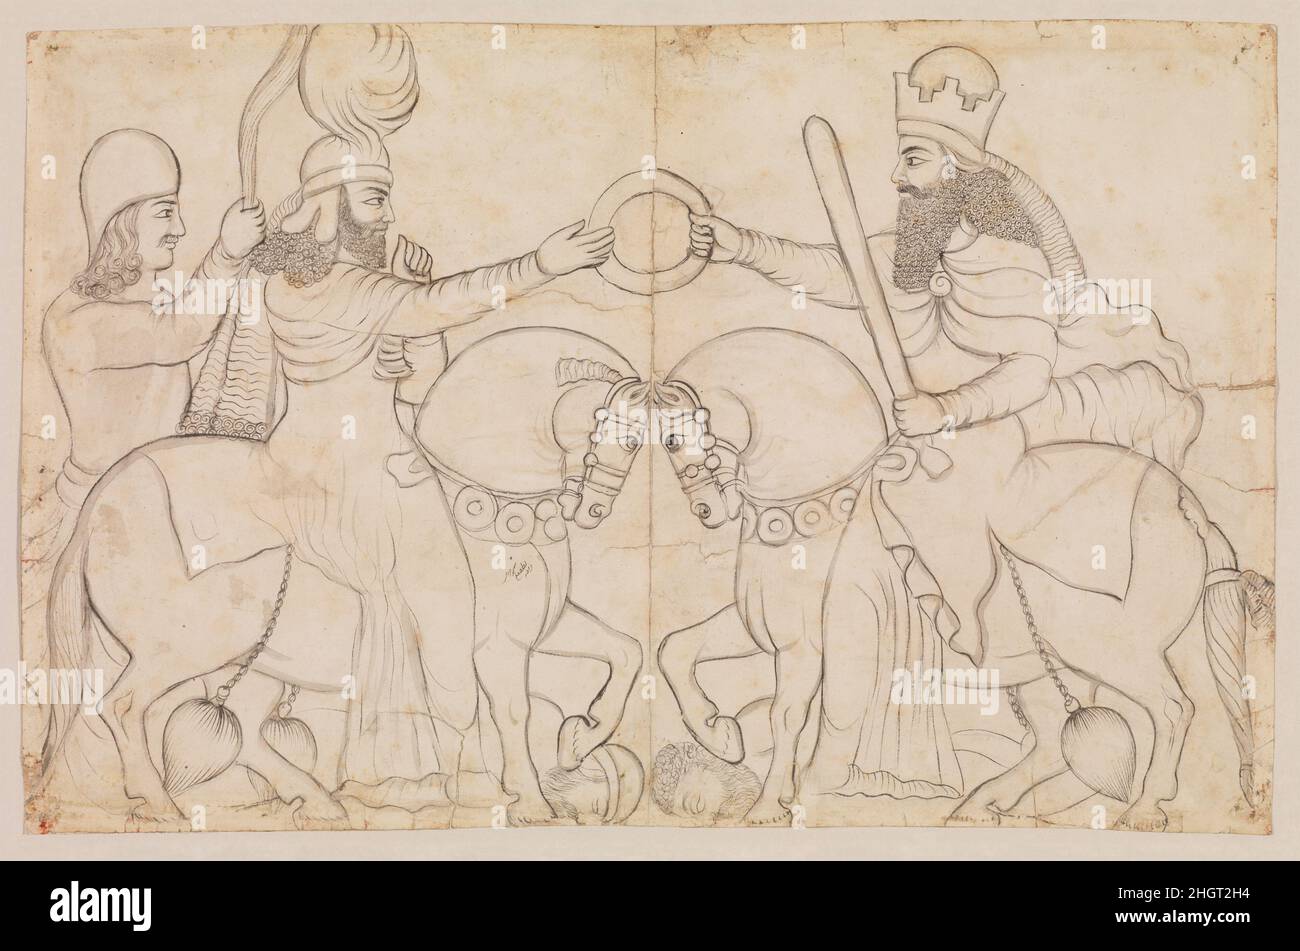 Dessin de relief de roche sasanienne: Ardashir I (r.A.D. 224-241) et la divinité zoroastrienne Ohrmadd [Ahura Mazda] à Naqsh-i Rustam, dans le sud de l'Iran ca.A.D. 1812 Lutf-'Ali Shirazi ce dessin d'un relief rocheux sasanien à Naqsh-i Rustam, Iran, dépeint l'investiture d'Ardashir I (r.224-241), qui reçoit l'anneau de mandat d'Ahura Mazda, le Dieu suprême zoroastrien.Le roi et dieu sont tous deux à cheval; le dieu porte un caftan, le prestigieux costume d'équitation de l'époque sasanienne, et son porte-fan se tient derrière lui.Les chevaux piétinent les corps du dernier roi Parthien, Ardavan, et le Banque D'Images